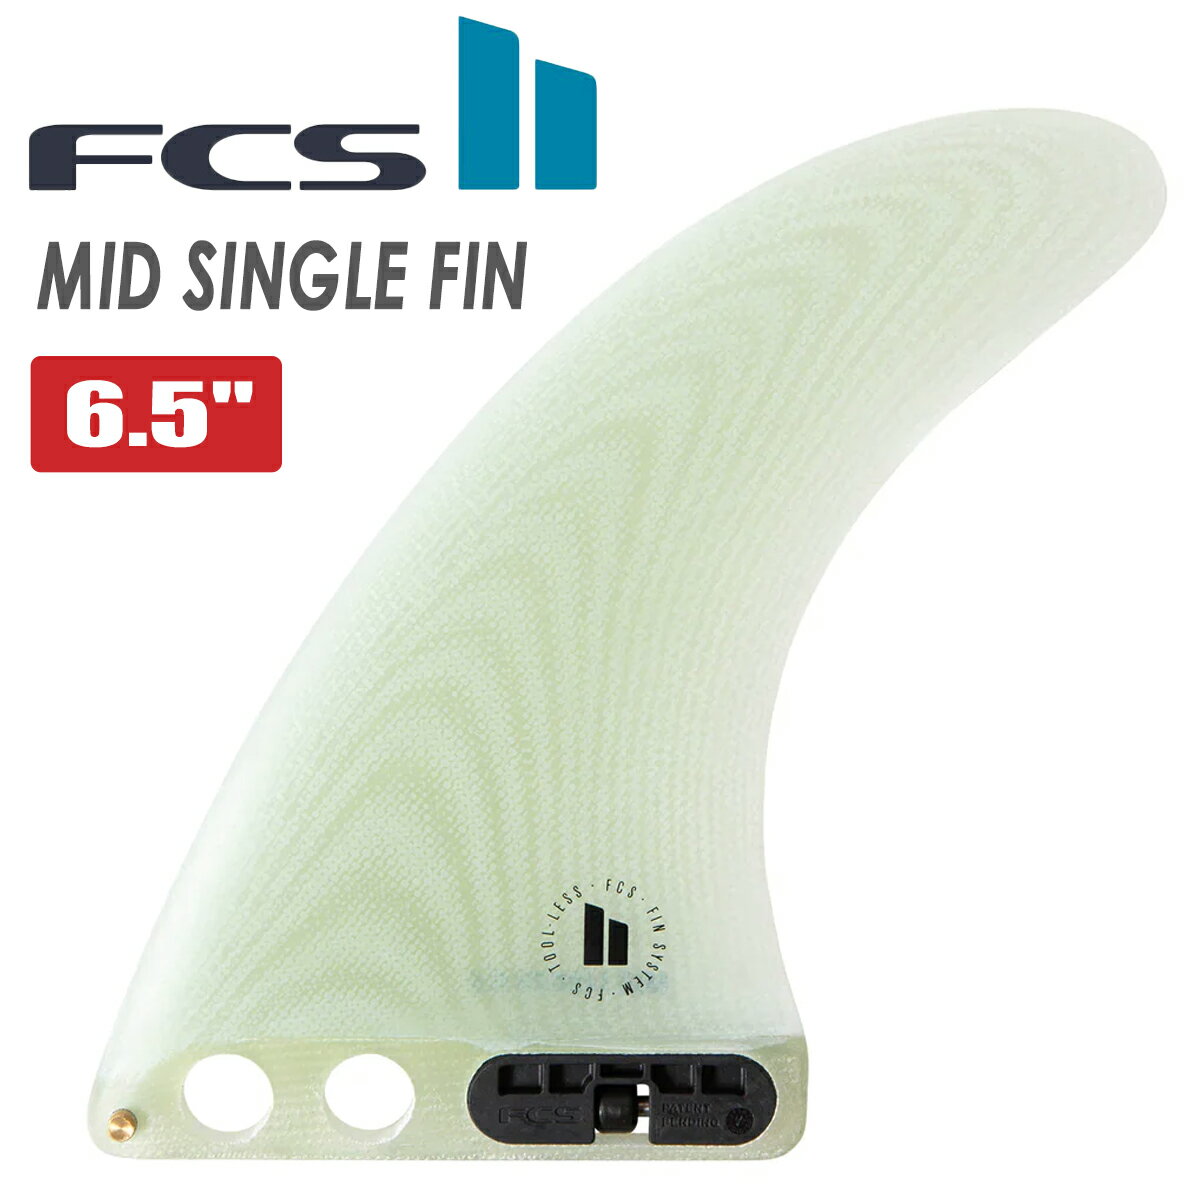 24 FCS2 ミッドレングス フィン MID SINGLE FIN 6.5” ミッド シングルフィン パフォーマンスグラス PG ロングフィン 6.5ft 日本正規品